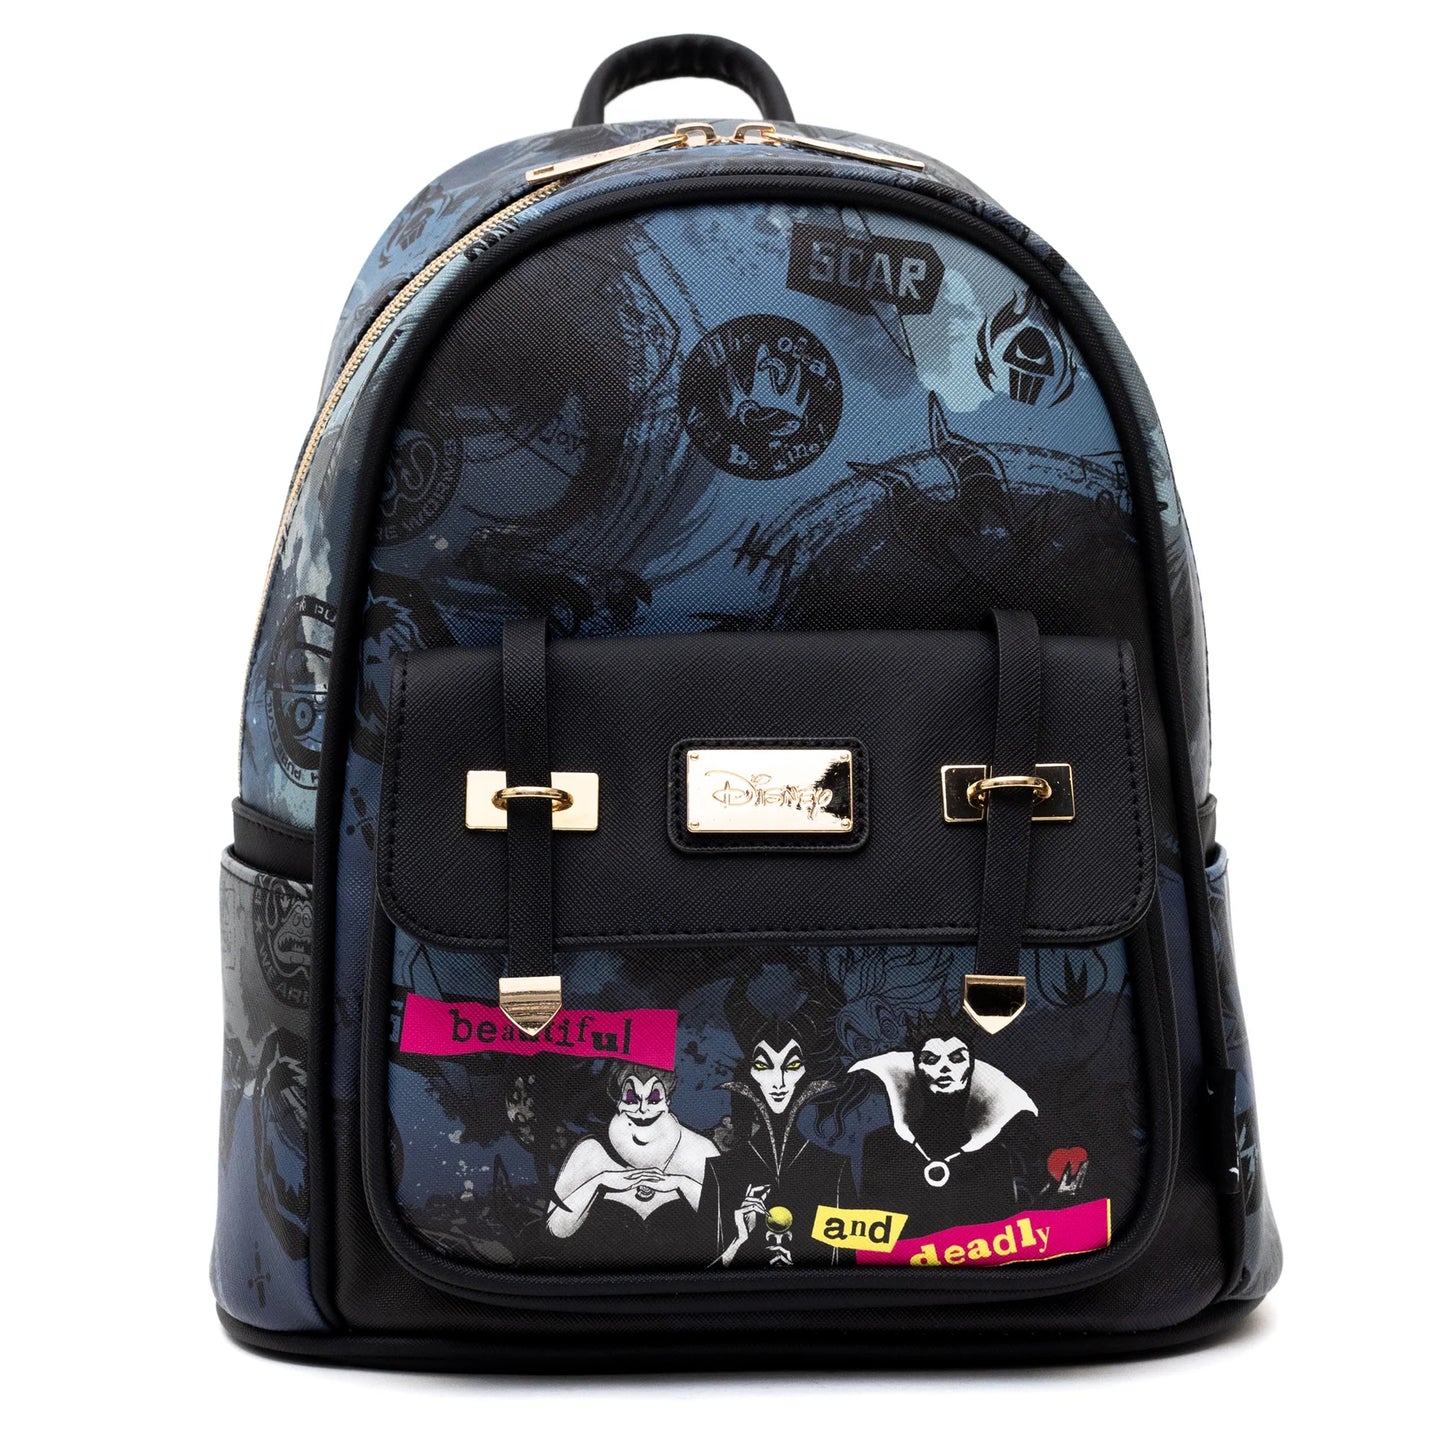 Wondapop Finding Dory 11 Vegan Leather Fashion Mini Backpack